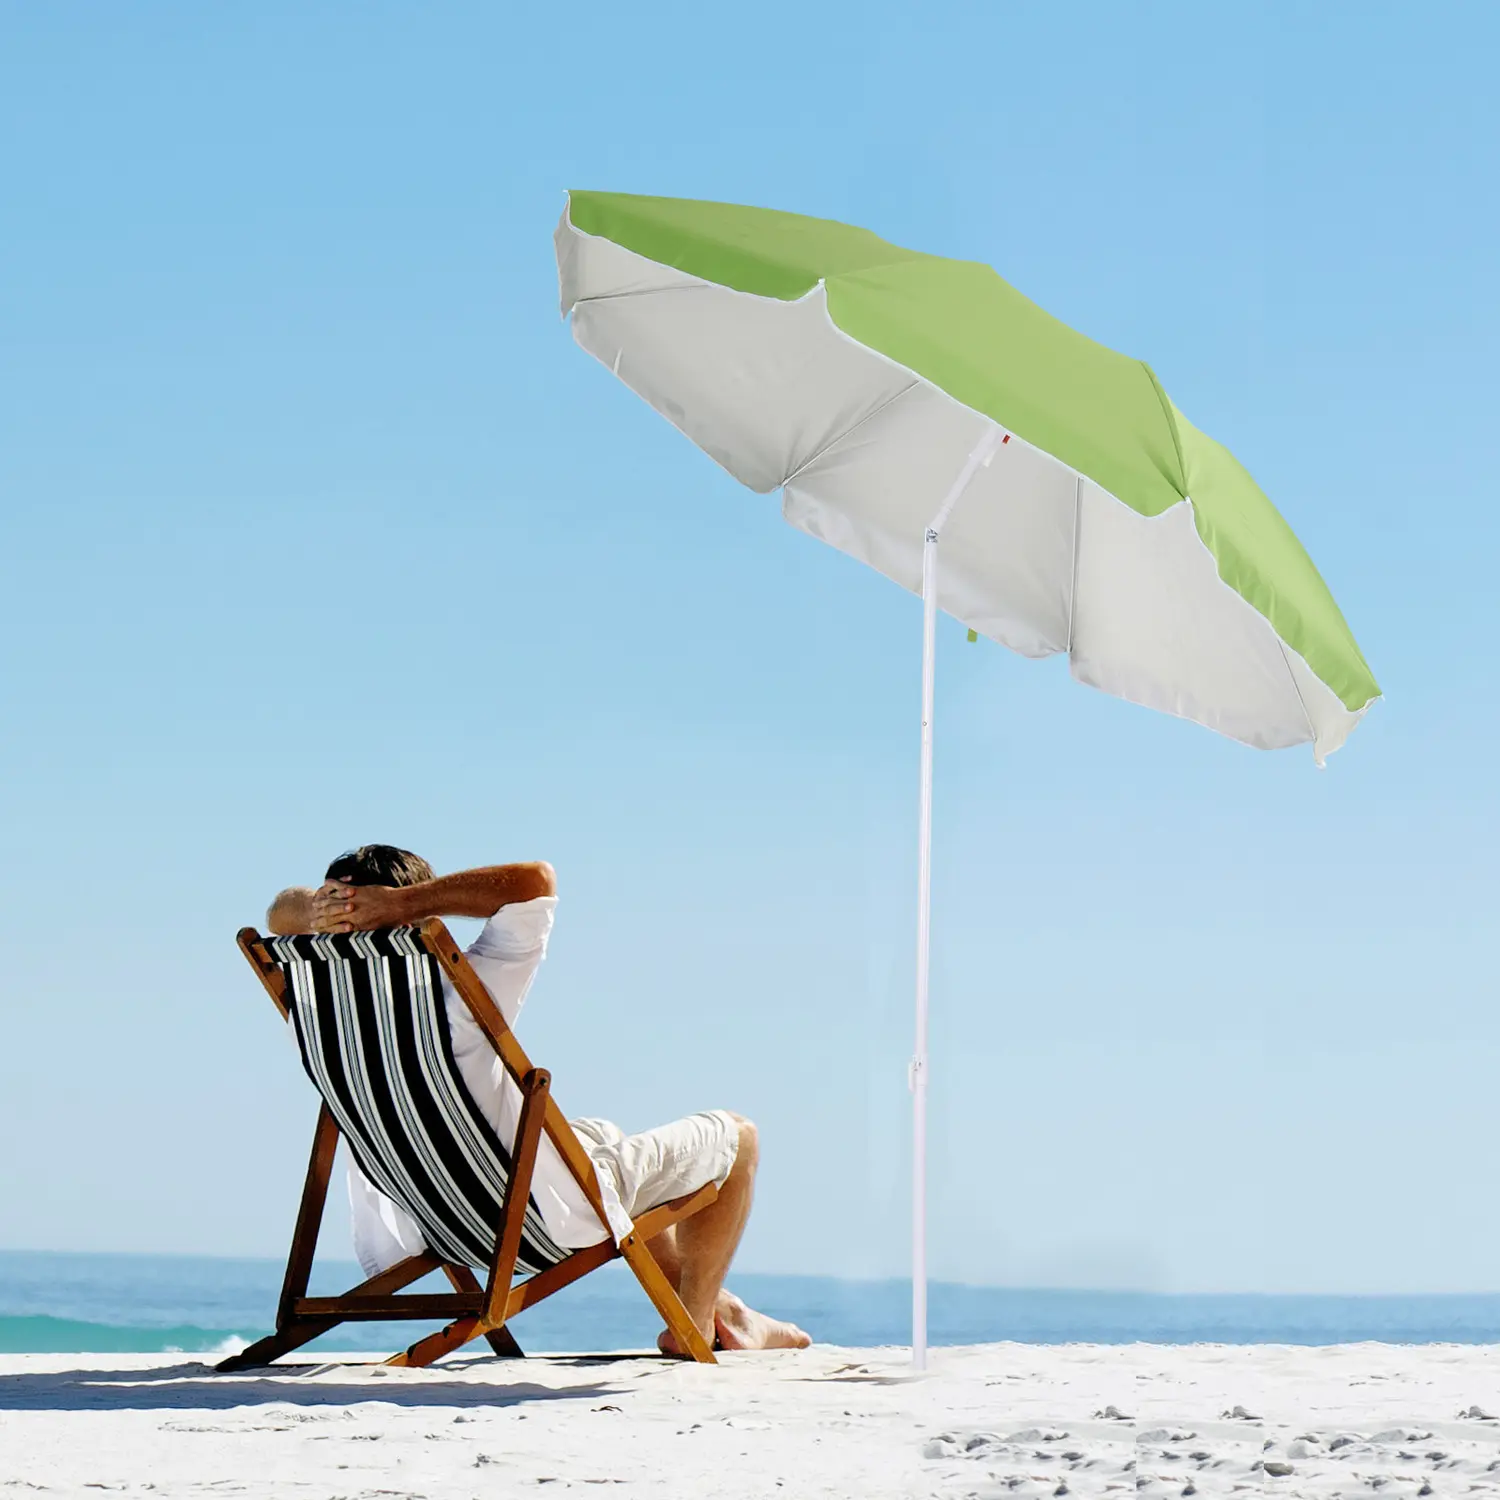 مظلة شاطيء شمسية محمولة بحجم مخصص مقبولة للحماية من أشعة الشمس ، مظلة شاطيء عالية الجودة من مصنع الصين 8 أقدام